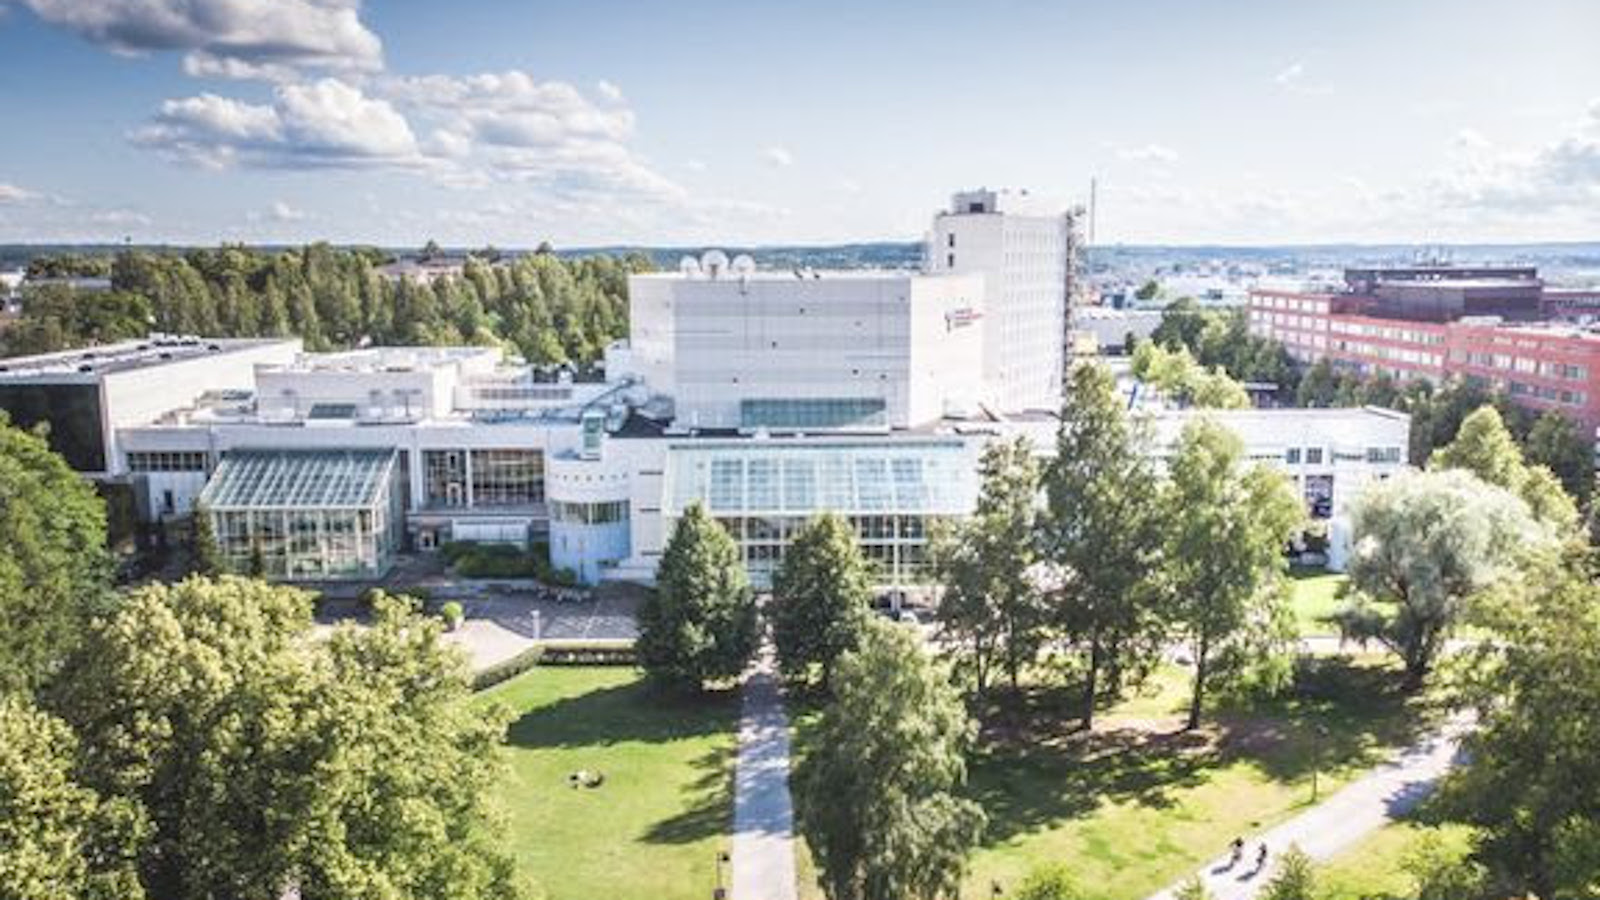 Tampereen Kirjamessut – Kirjafestarit 2021 järjestetään Tampere-talossa.